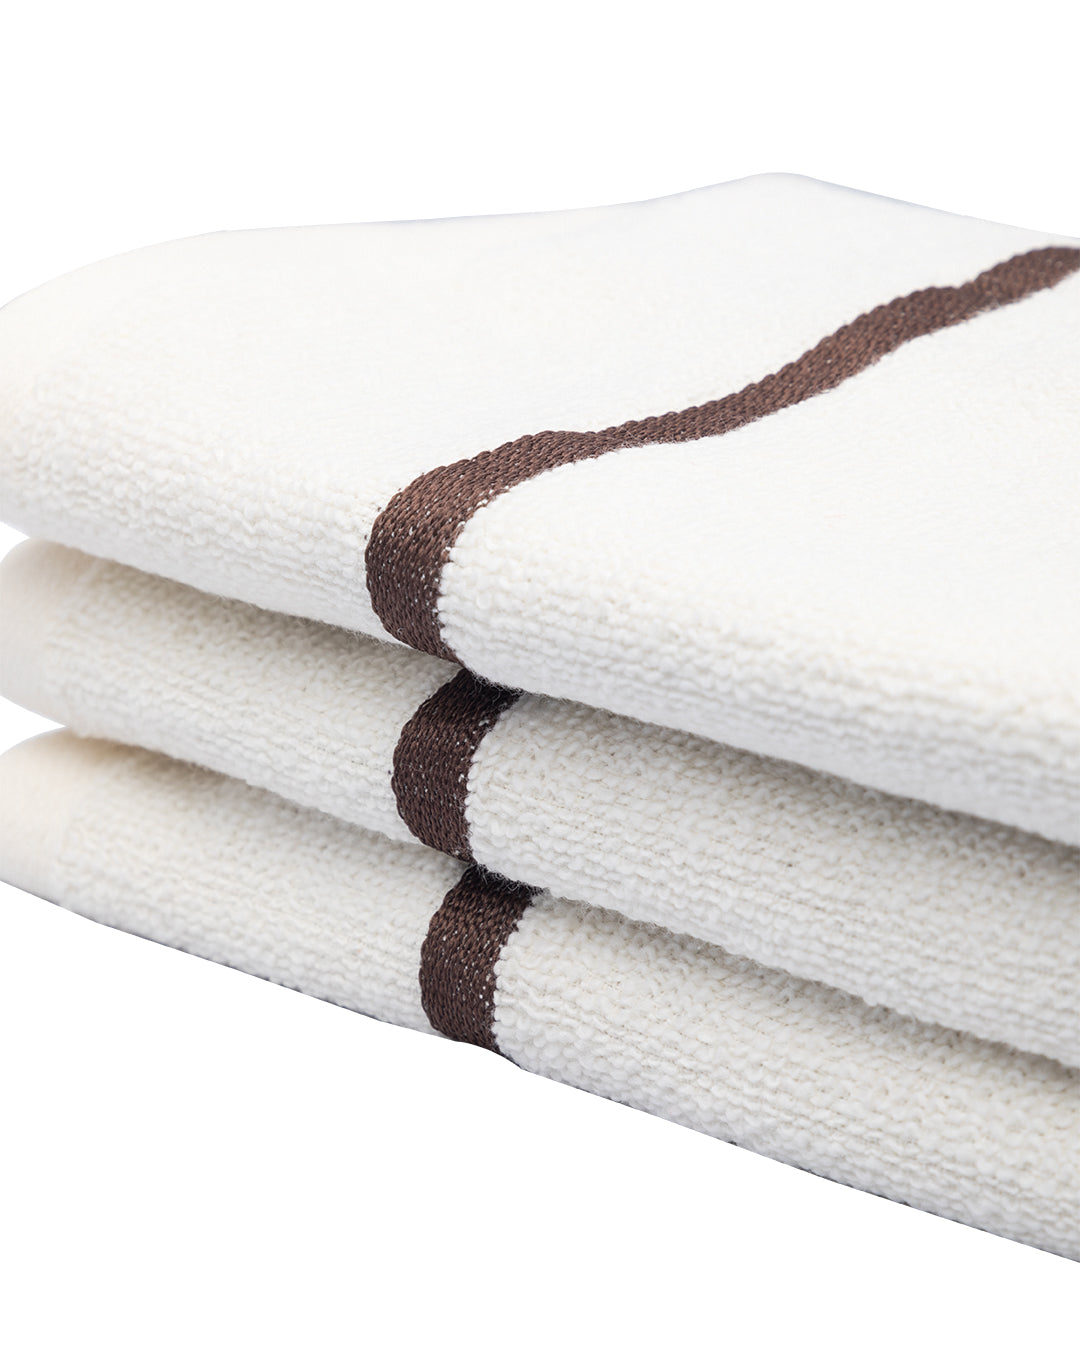 VON CASA Zero Twist Face Towel, White, Cotton, Set of 3